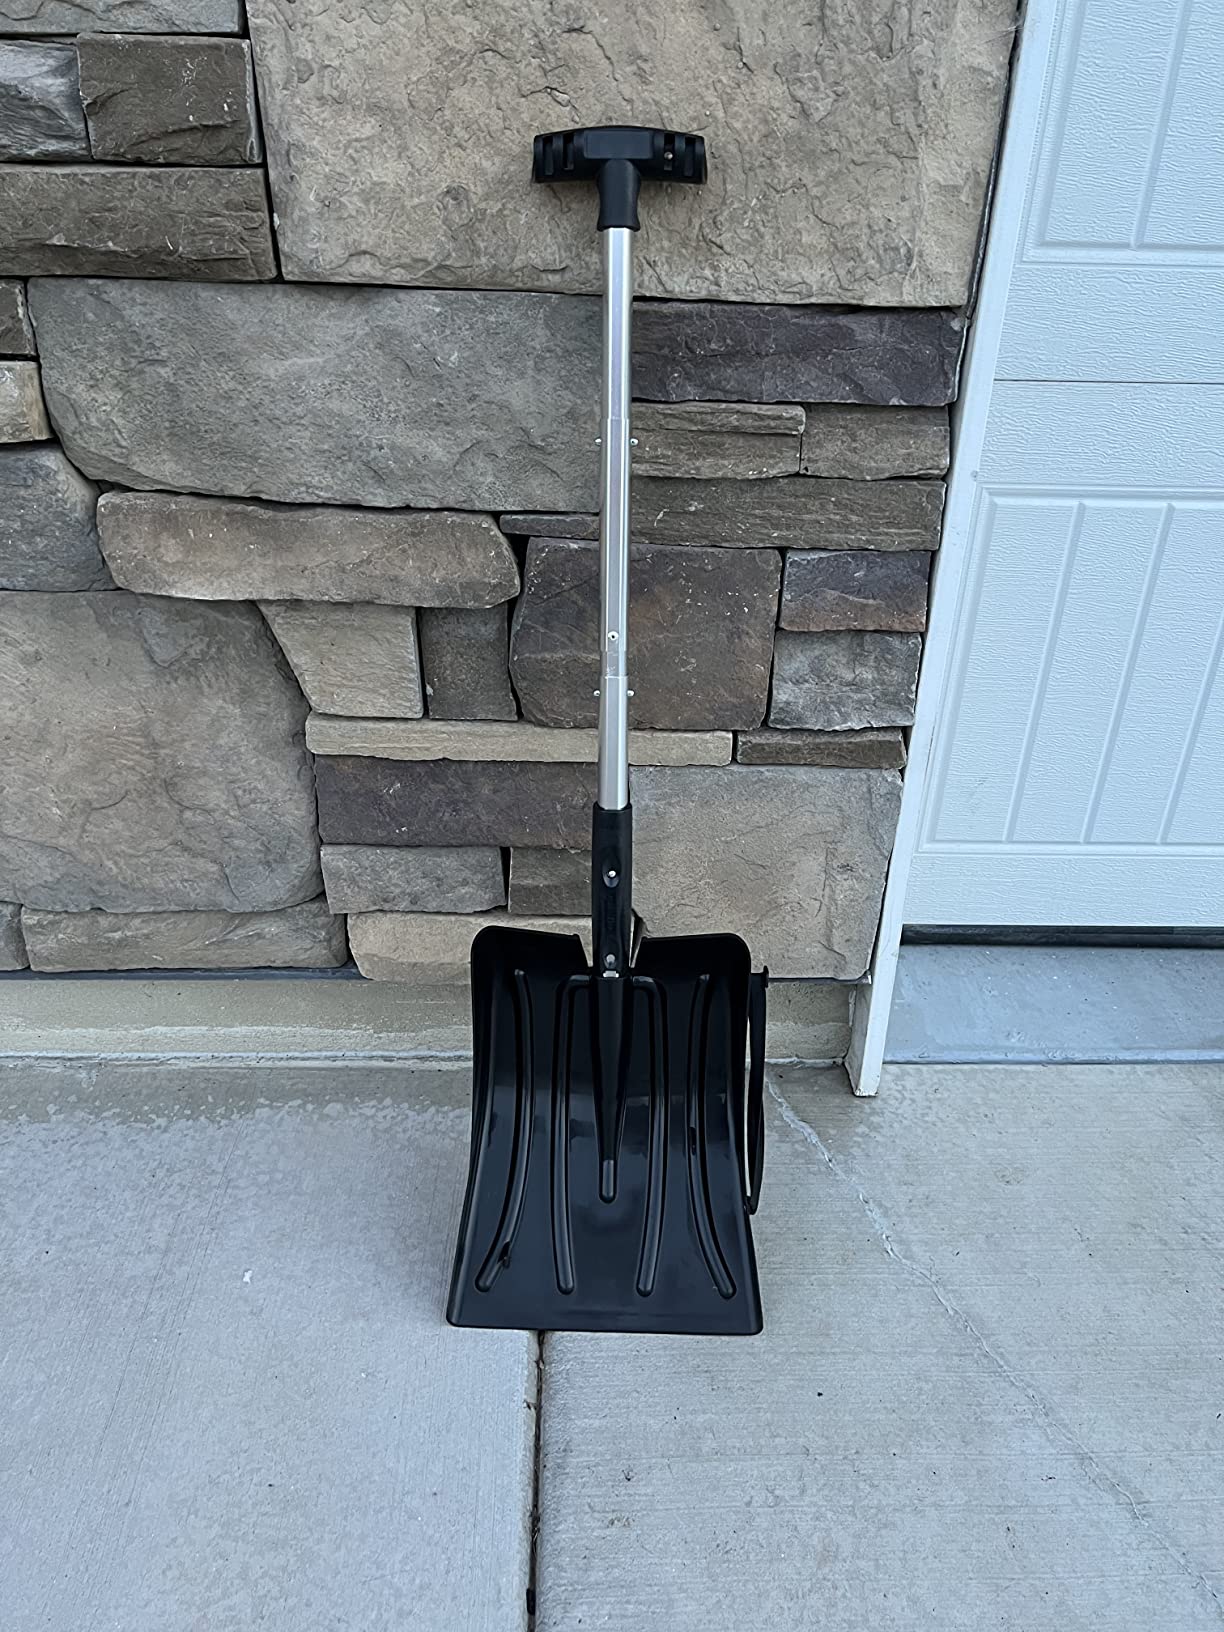 Very handy shovel, scraper, and brush.